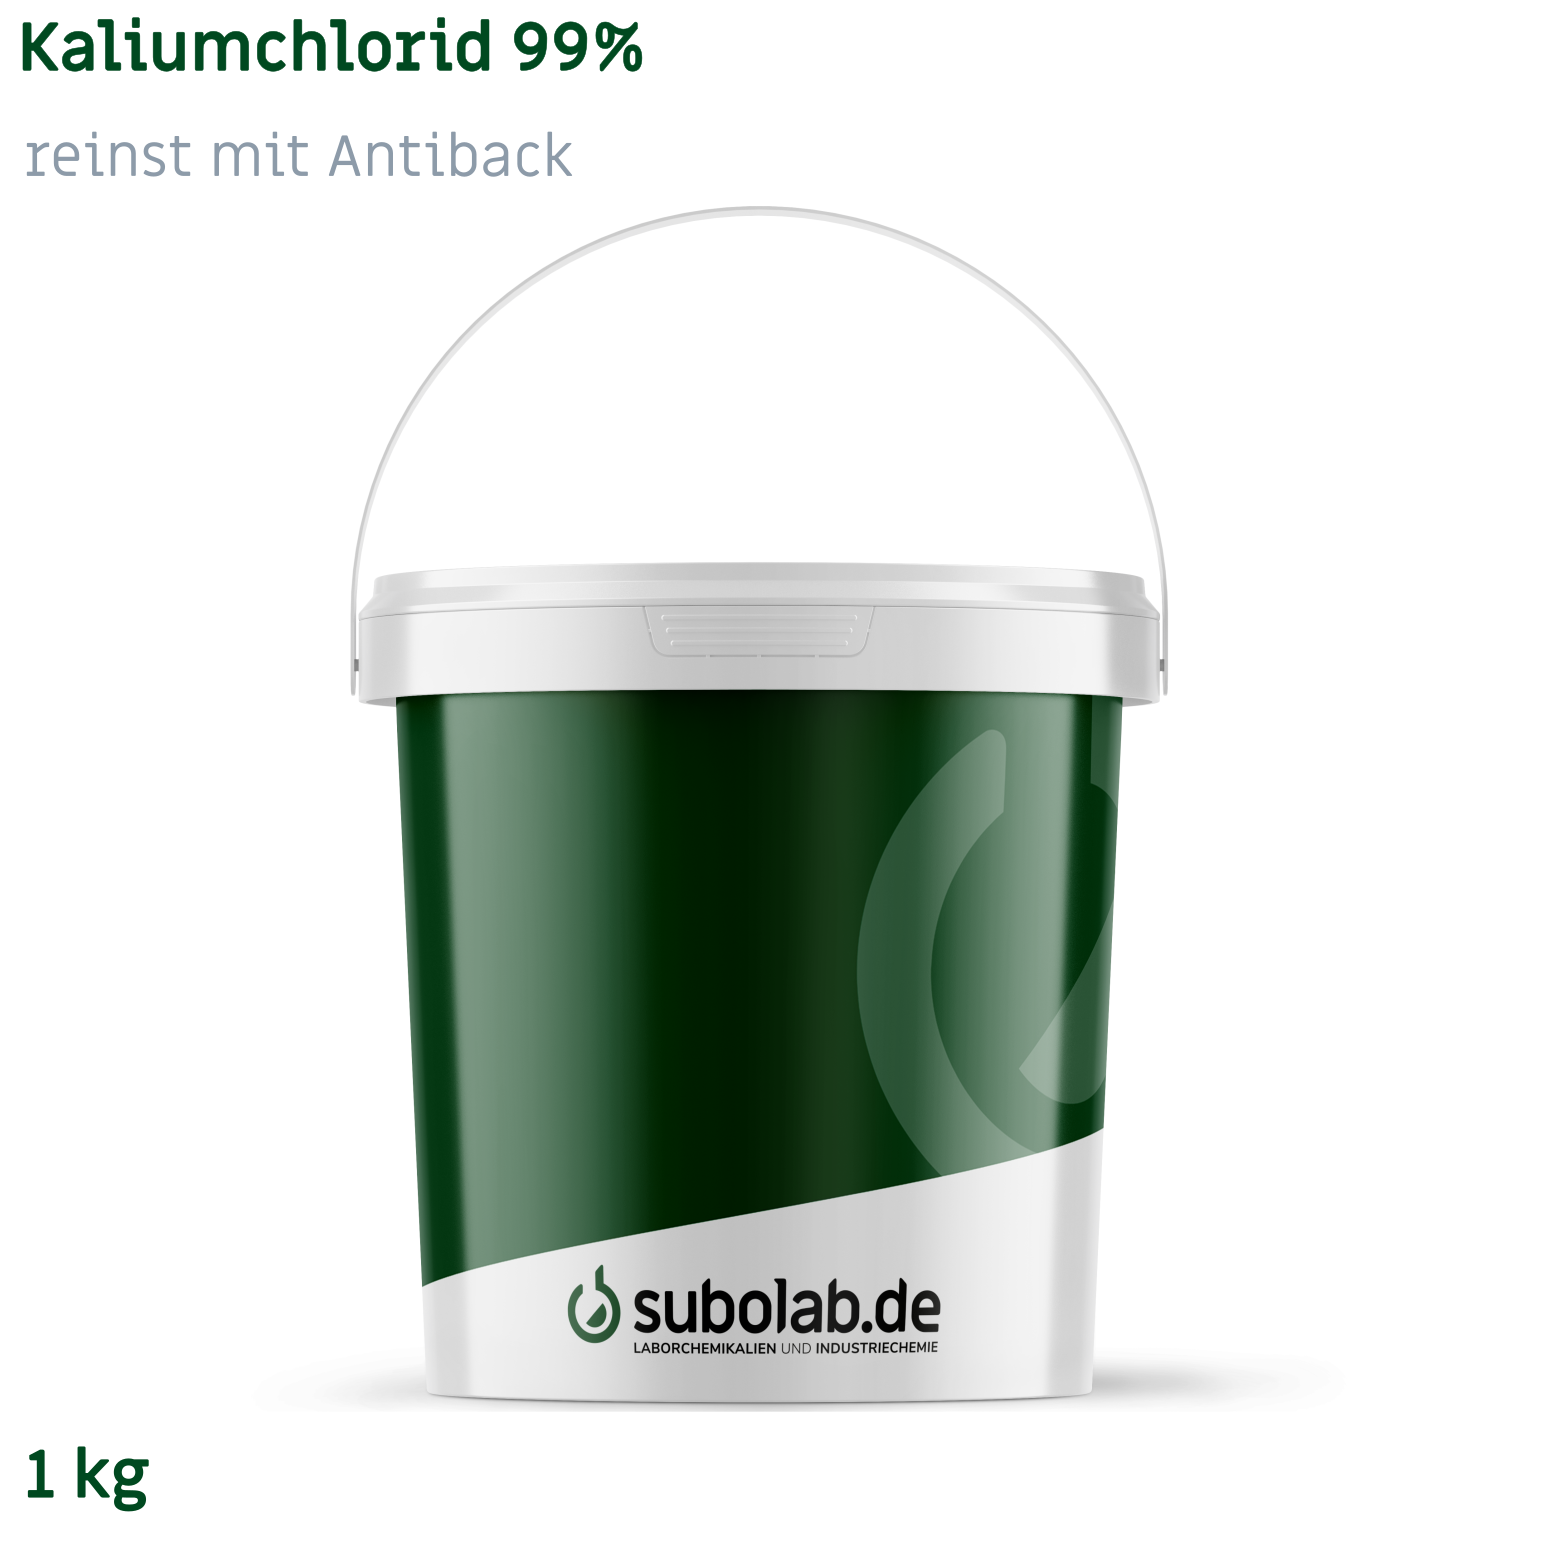 Bild von Kaliumchlorid 99% reinst mit Antiback (1 kg)